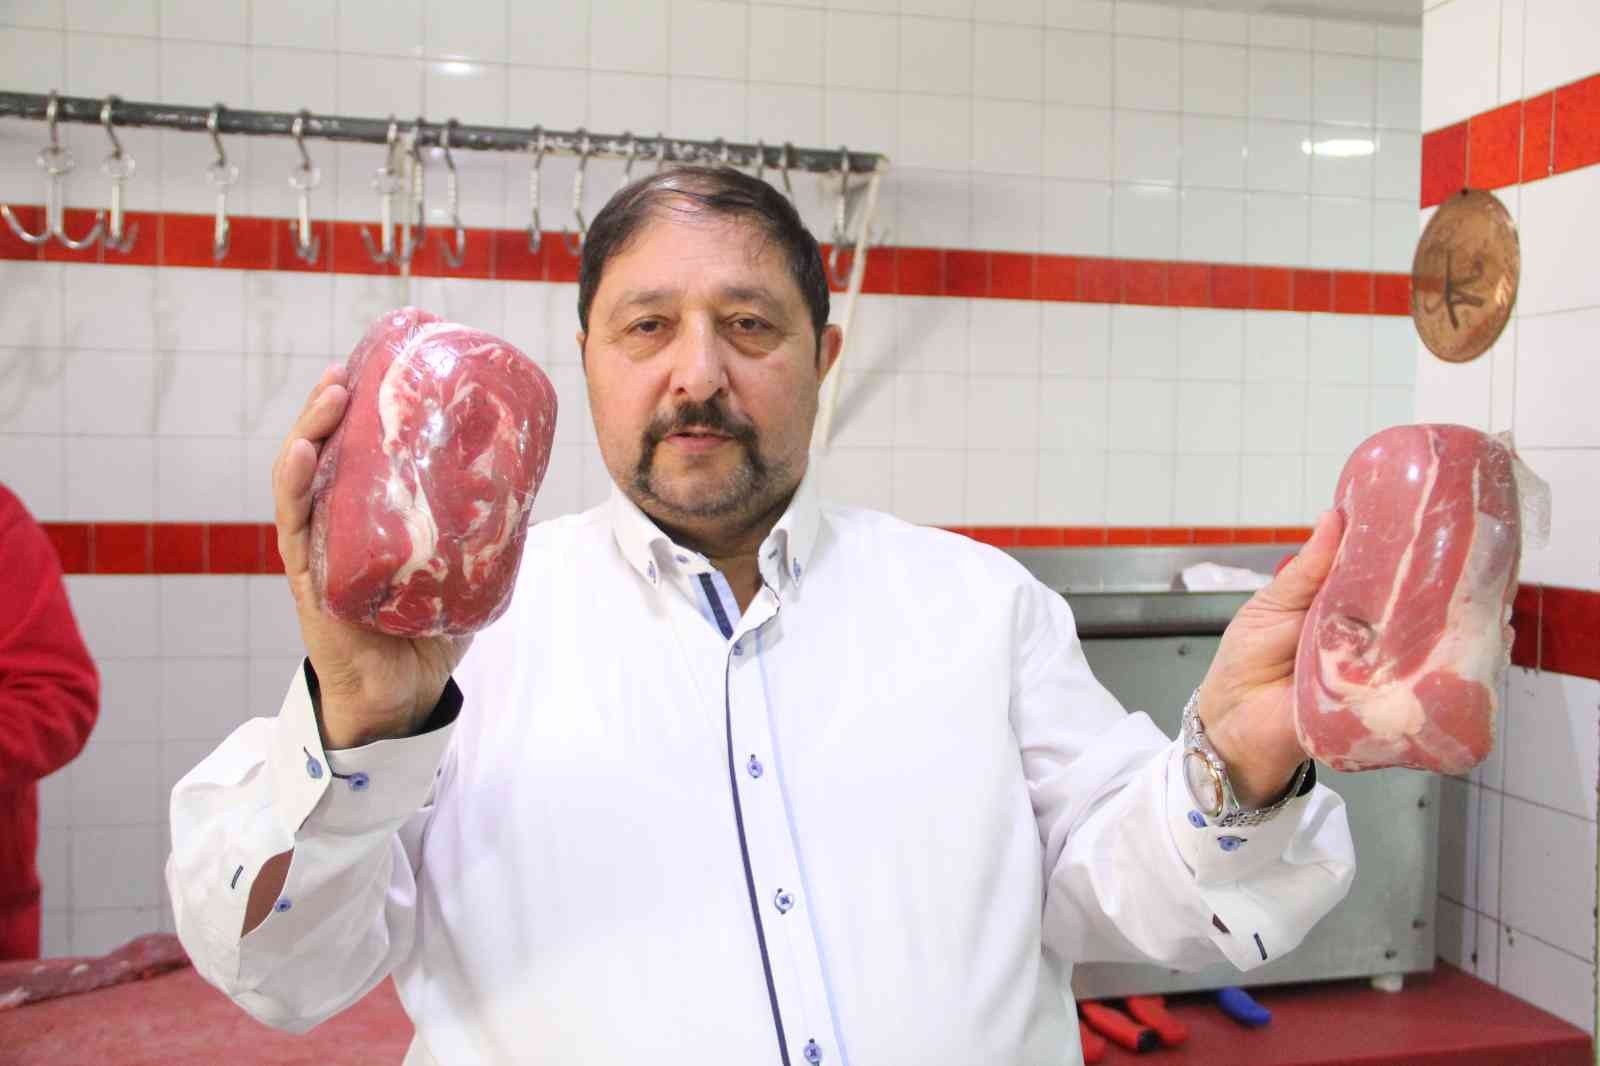 Türkiye Kasaplar Federasyonu Başkan Vekili Yardımcı: Et şu an en ucuz gıda maddesidir #antalya